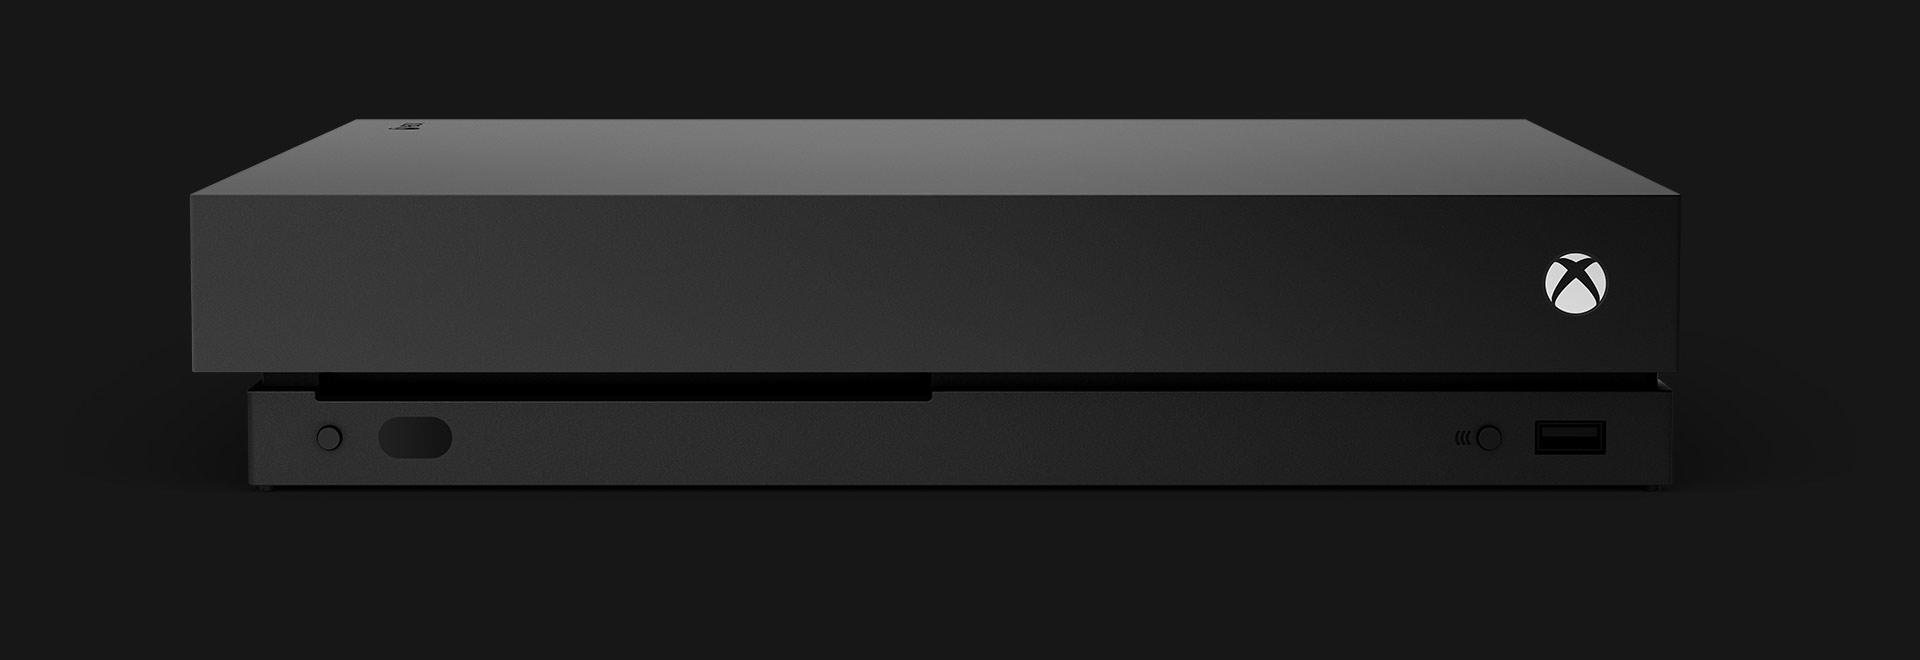 Het vooraanzicht van een Xbox One X-console.